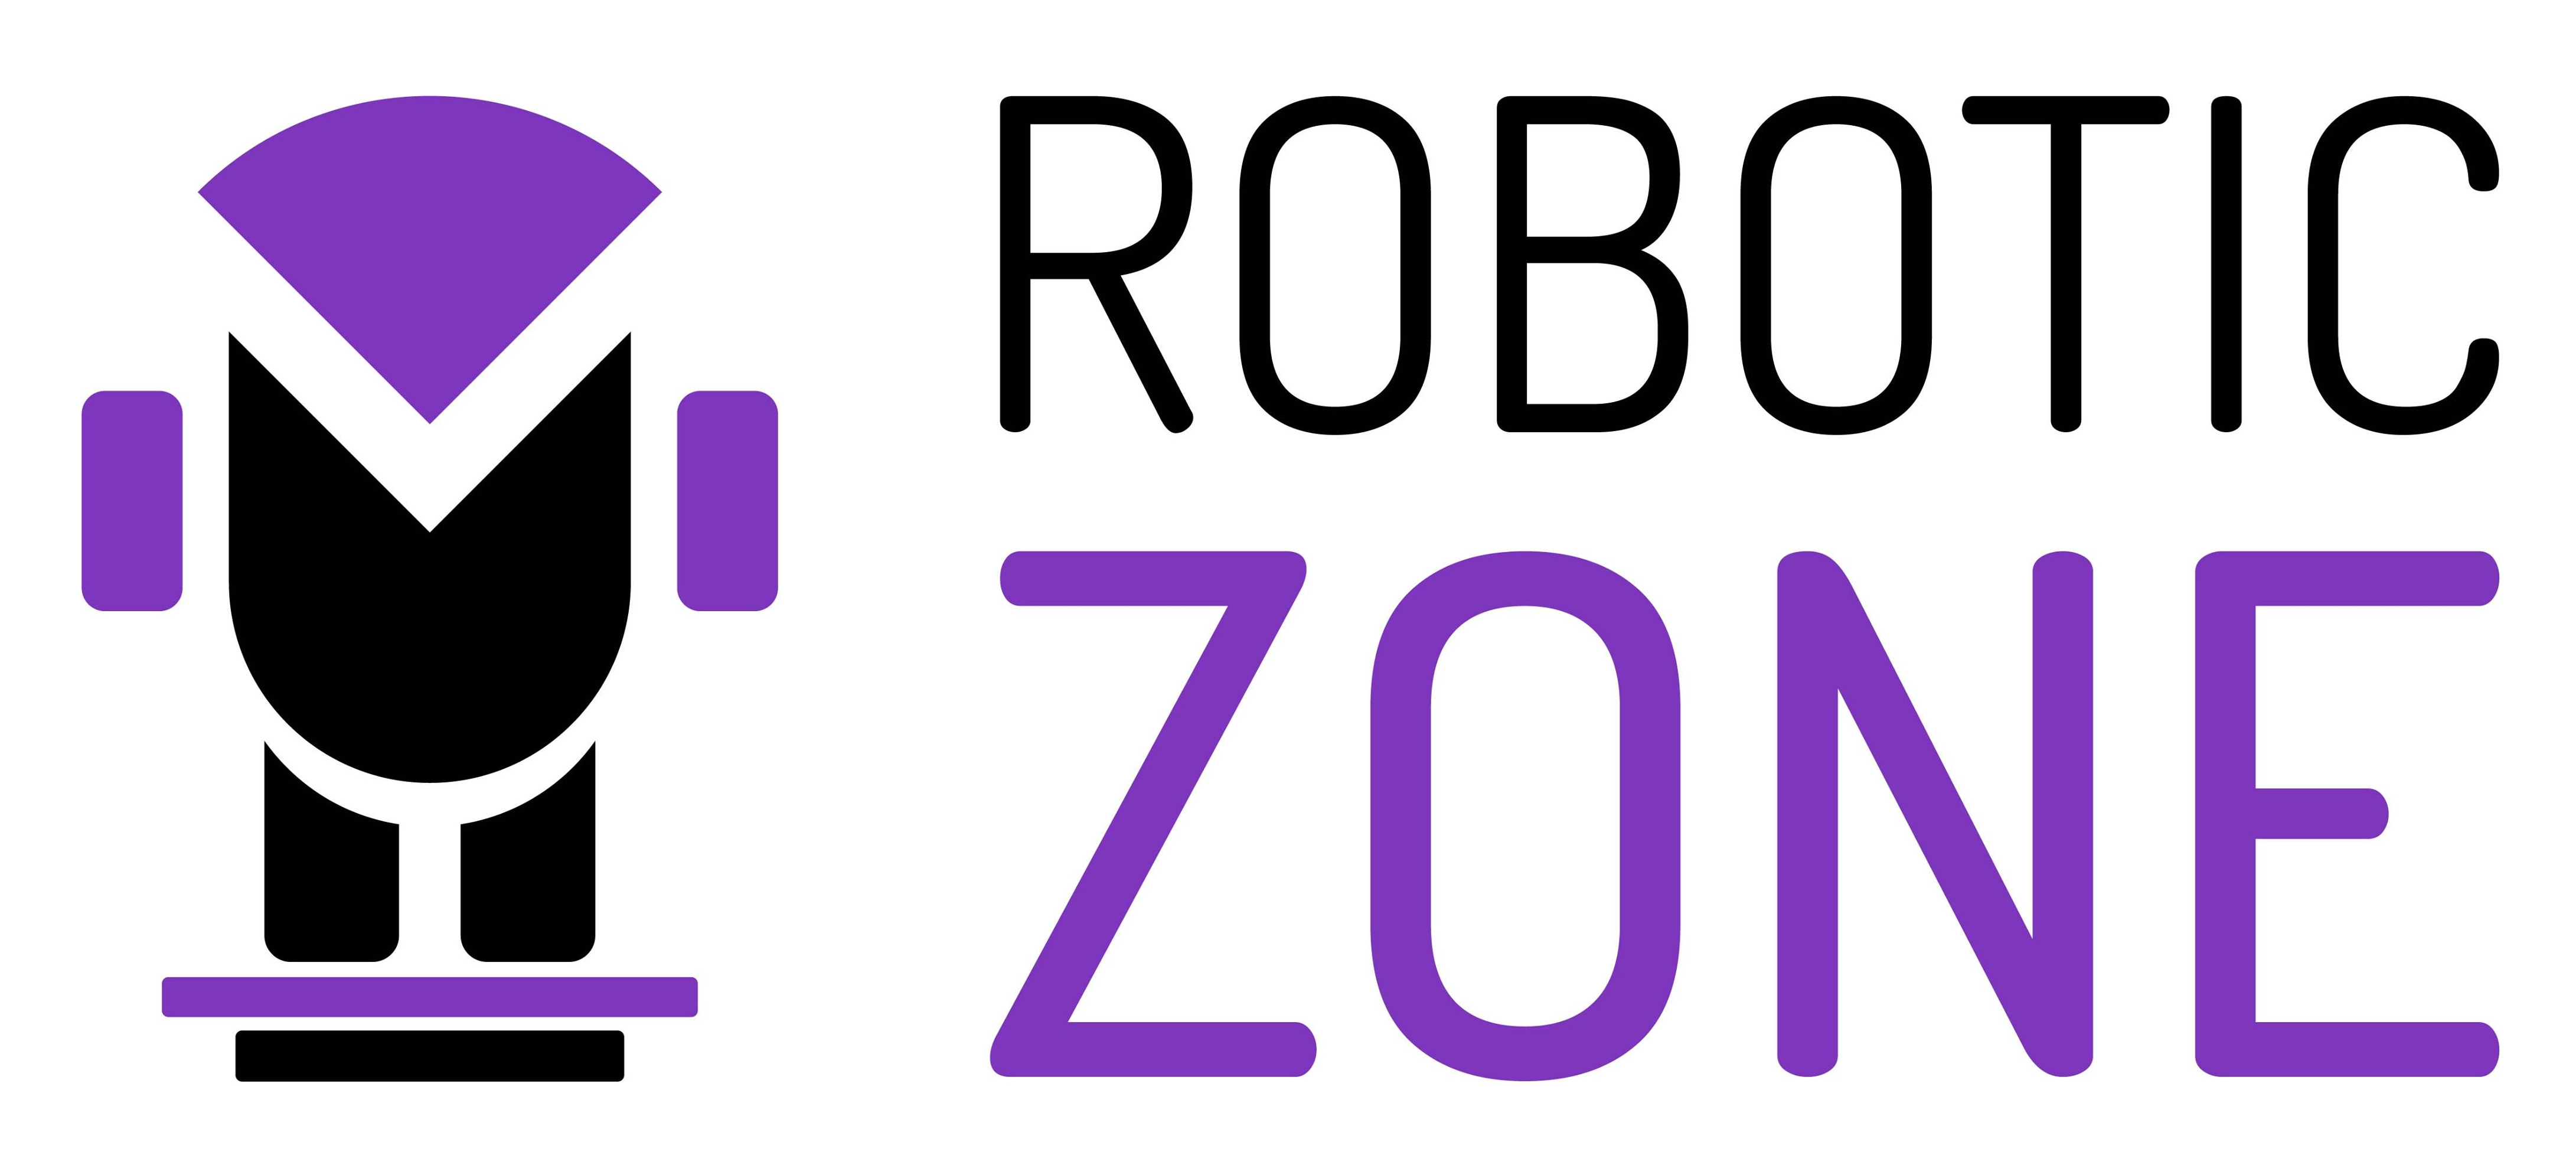 ROBOTIC ZONE